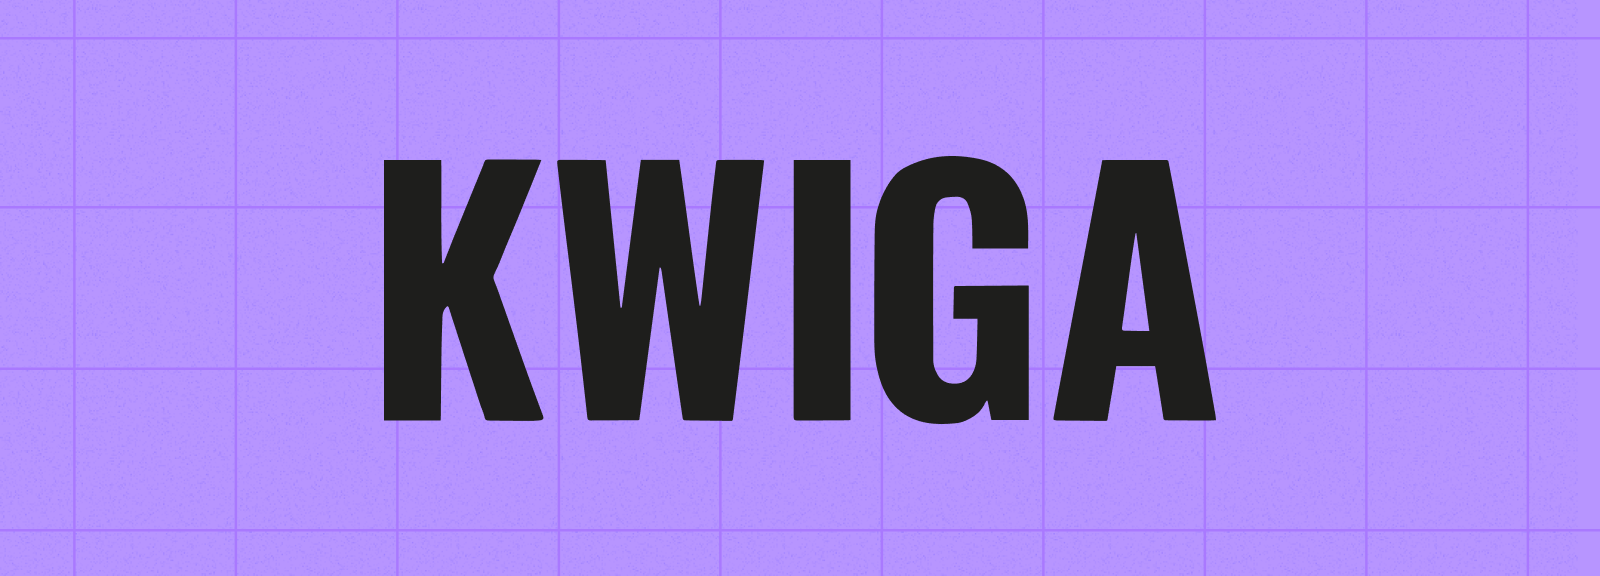 Kwiga